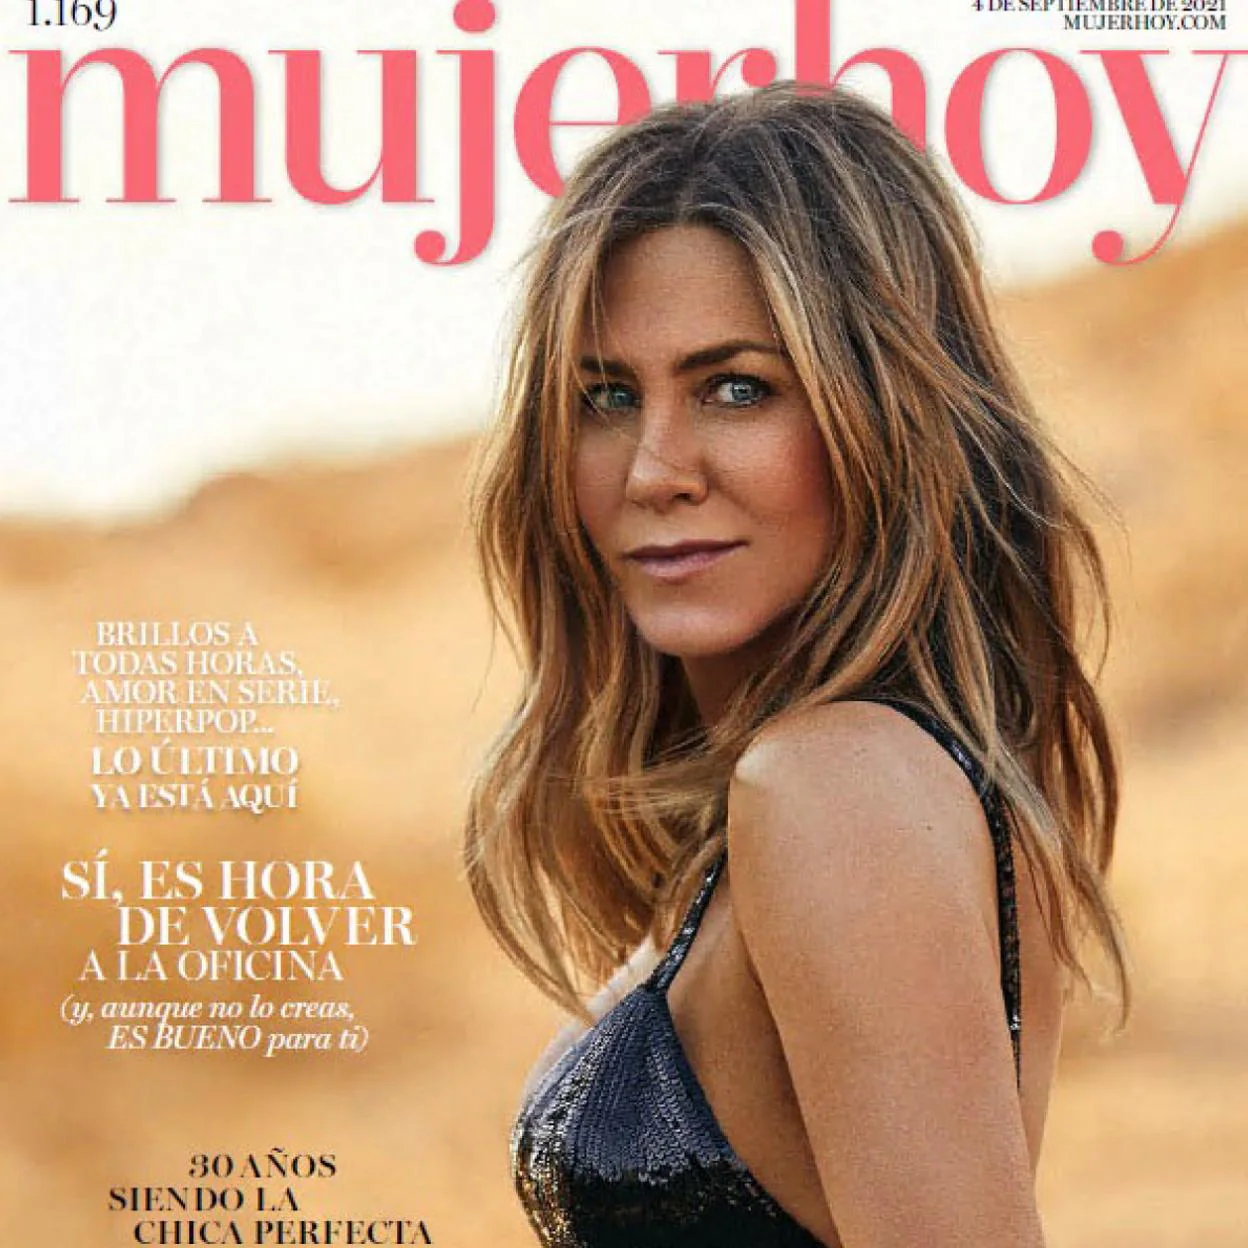 En portada: Jennifer Aniston, chica perfecta y una de las actrices famosas y mejor pagadas del planeta | Mujer Hoy